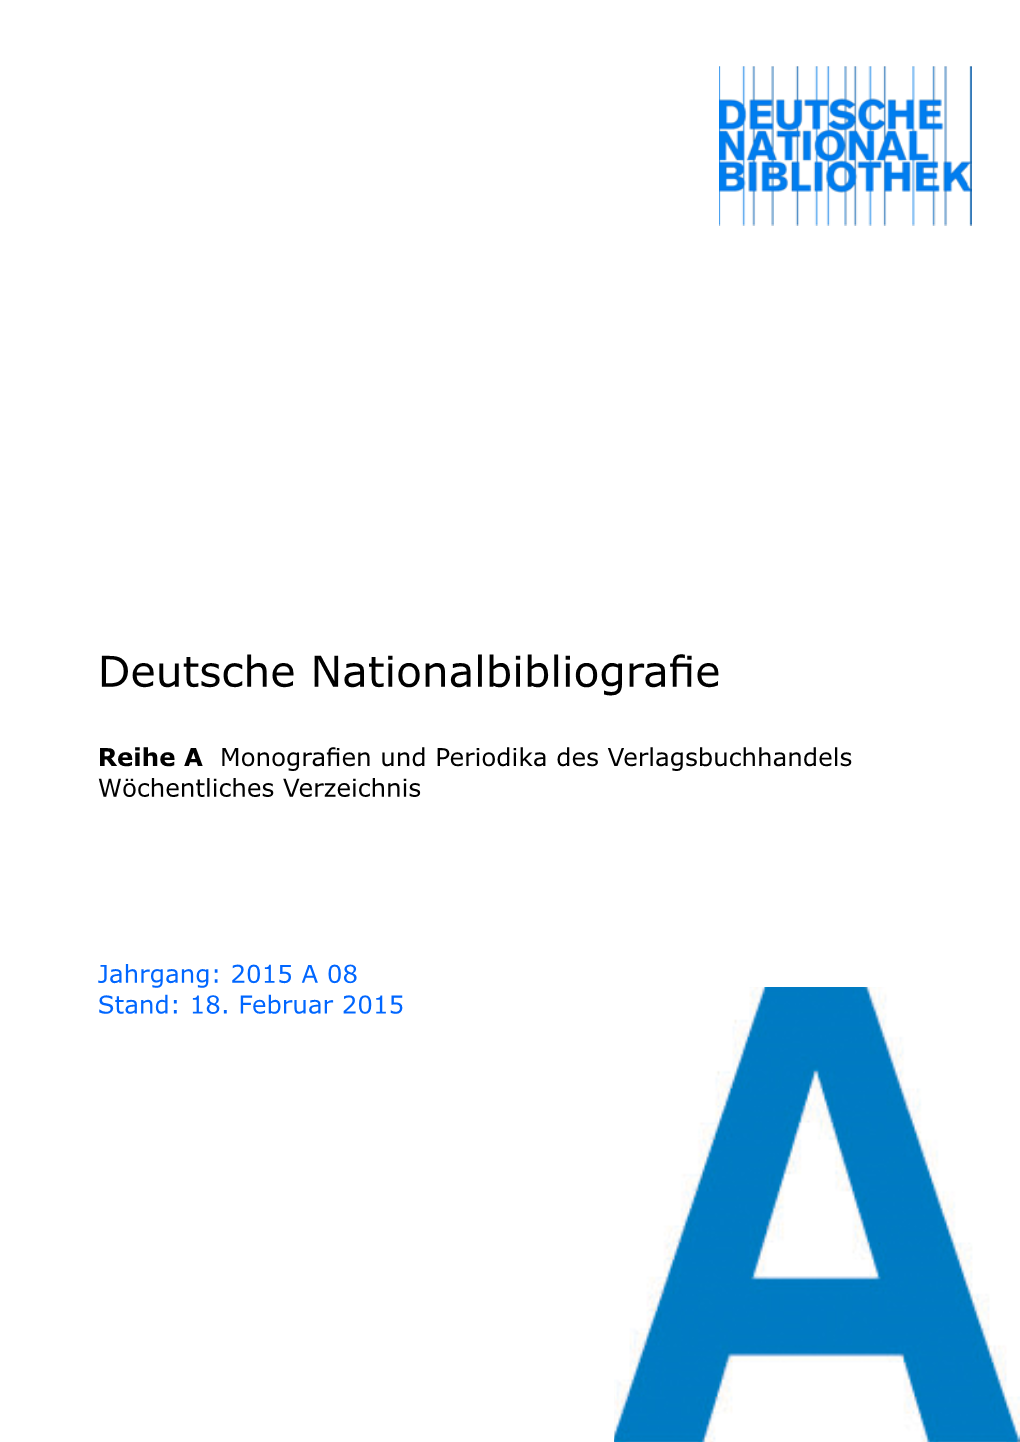 Deutsche Nationalbibliografie 2015 a 08